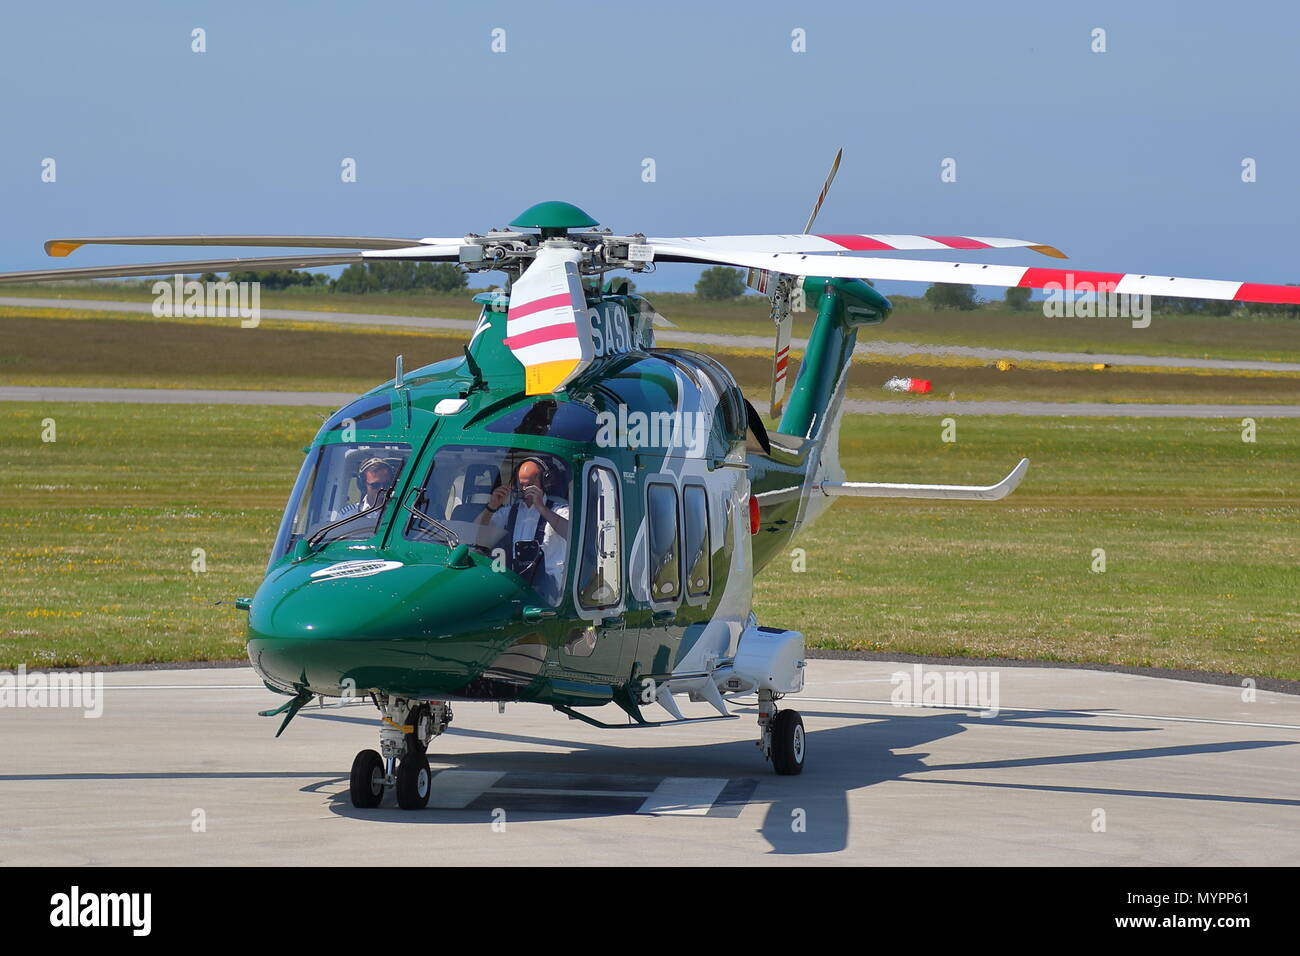 AgustaWestland AW169 G-SASX der Insel Hubschrauber zieht aus Lands End Flughafen mit Passagieren zu St Mary's, Scilly-inseln, Großbritannien Stockfoto